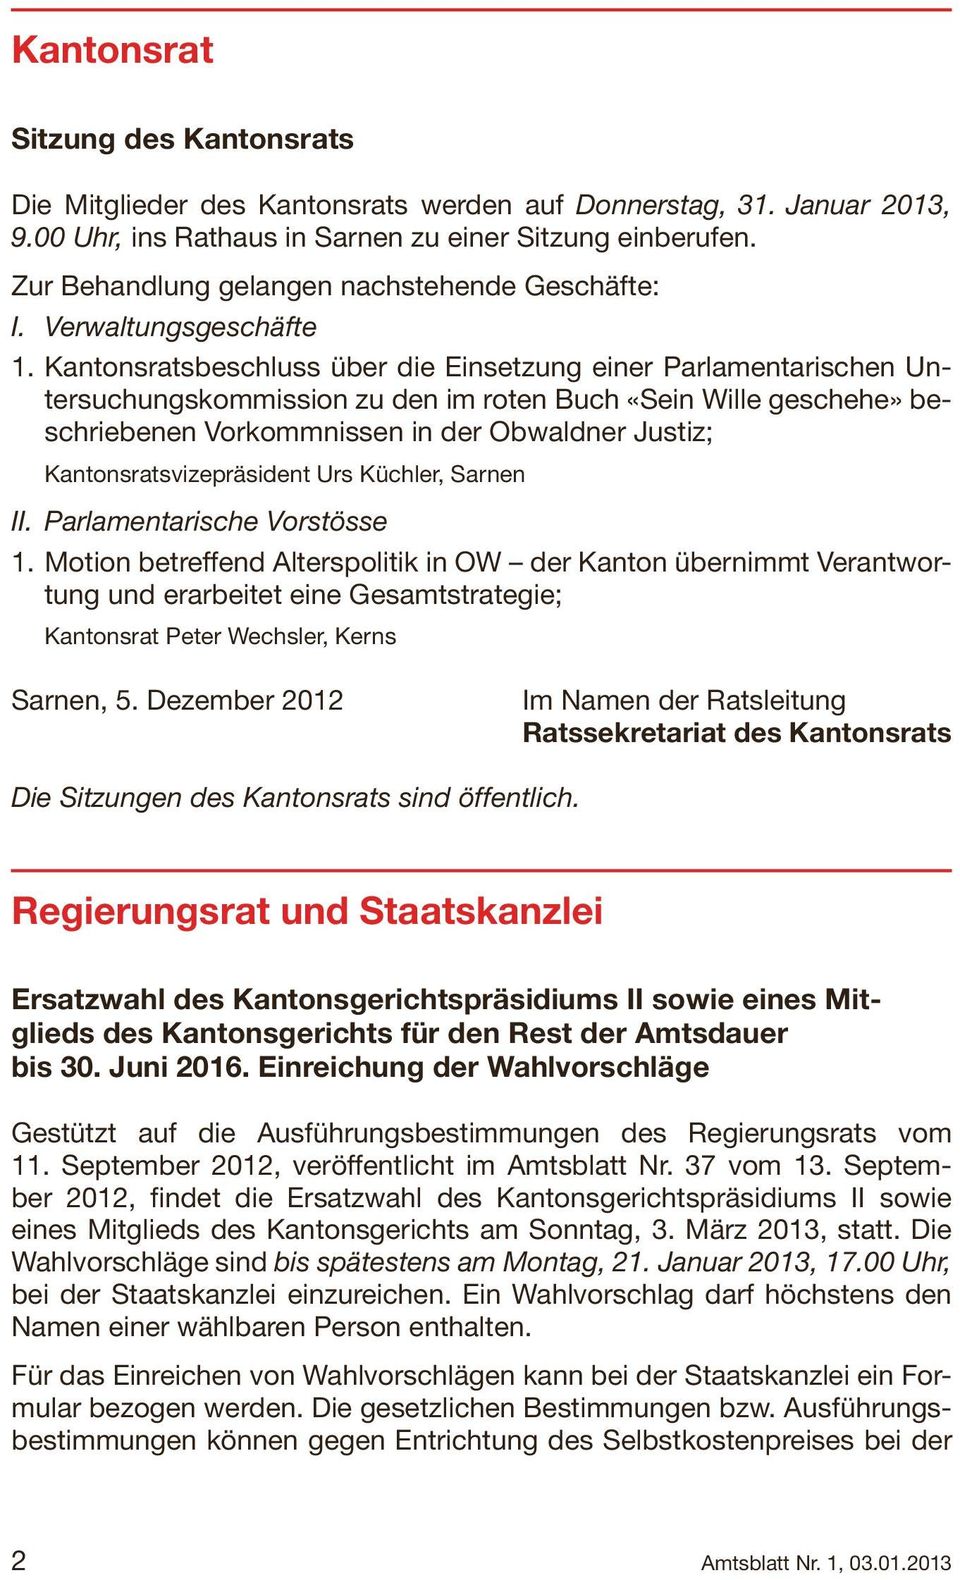 Kantonsratsbeschluss über die Einsetzung einer Parlamentarischen Untersuchungskommission zu den im roten Buch «Sein Wille geschehe» beschriebenen Vorkommnissen in der Obwaldner Justiz;